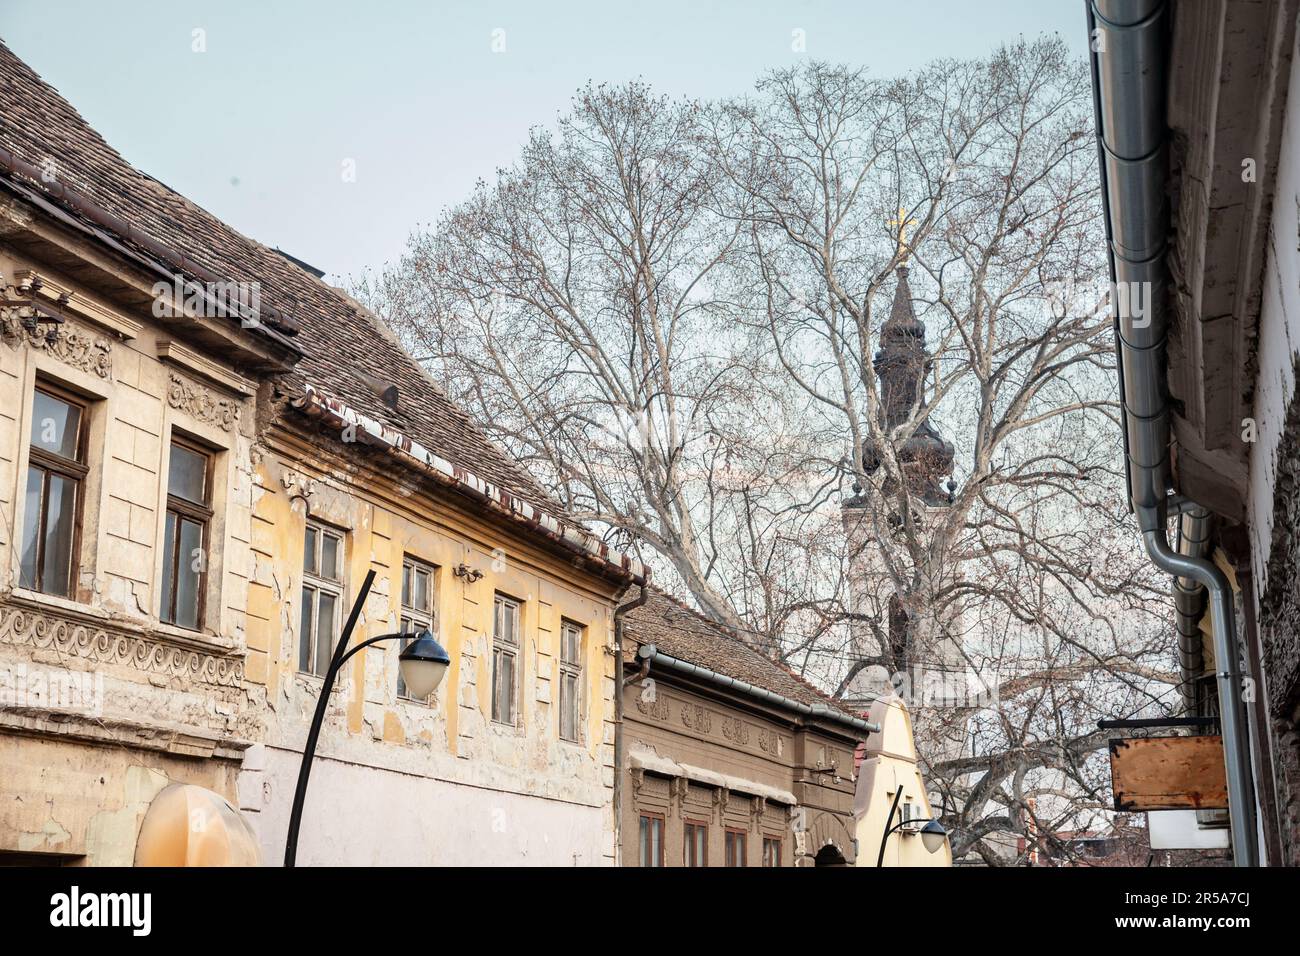 Bild der Unterkirche Sremski Karlovci, Serbien, von einer typisch österreichischen ungarischen Straße mit Wohngebäuden im Oldtimer-Stil. Sremski Karlovci i. Stockfoto